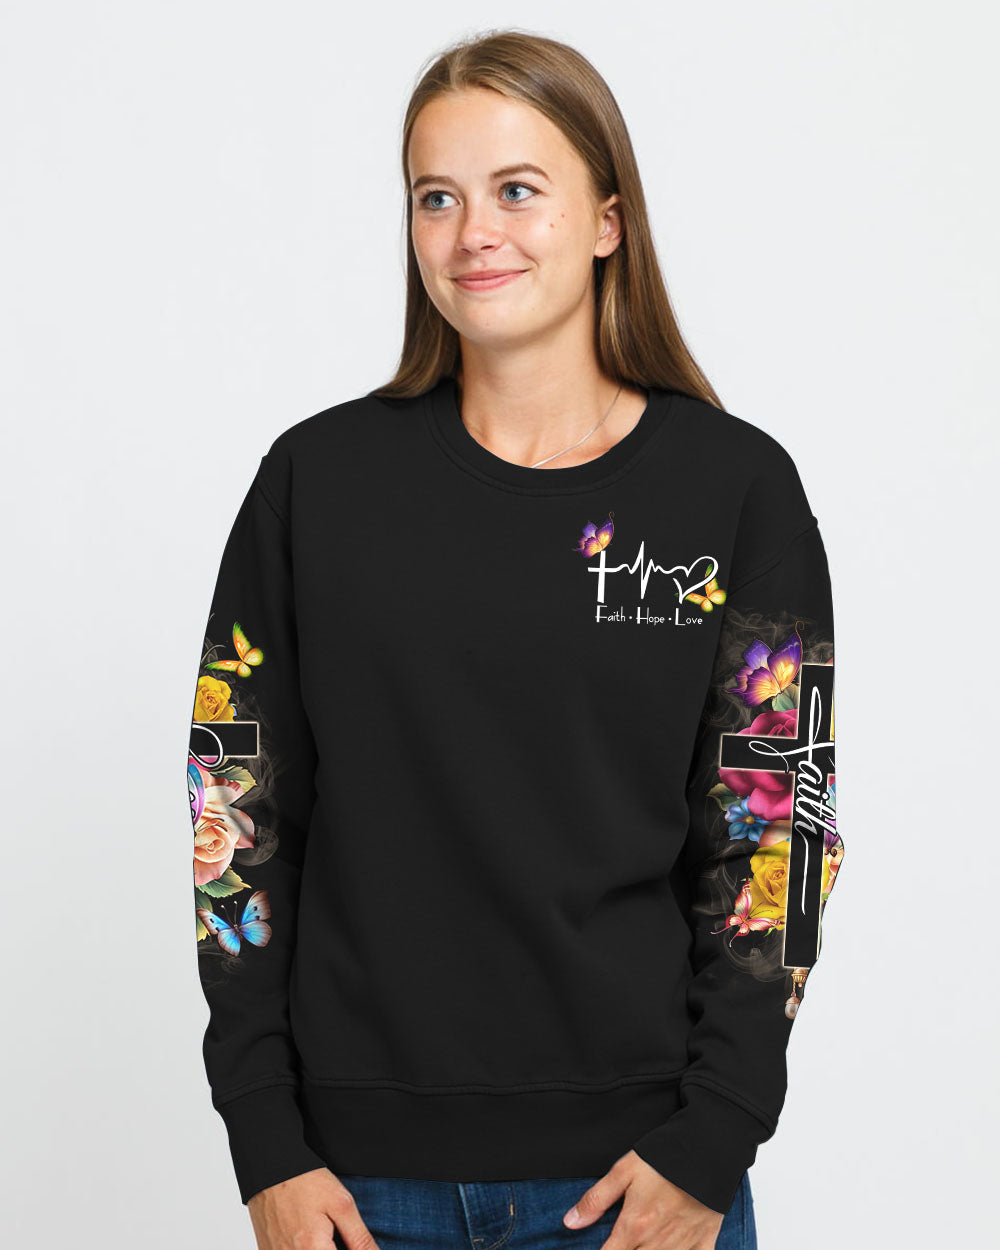 Faith Flowers Cross Butterfly Smoke Women's Christian Sweatshirt